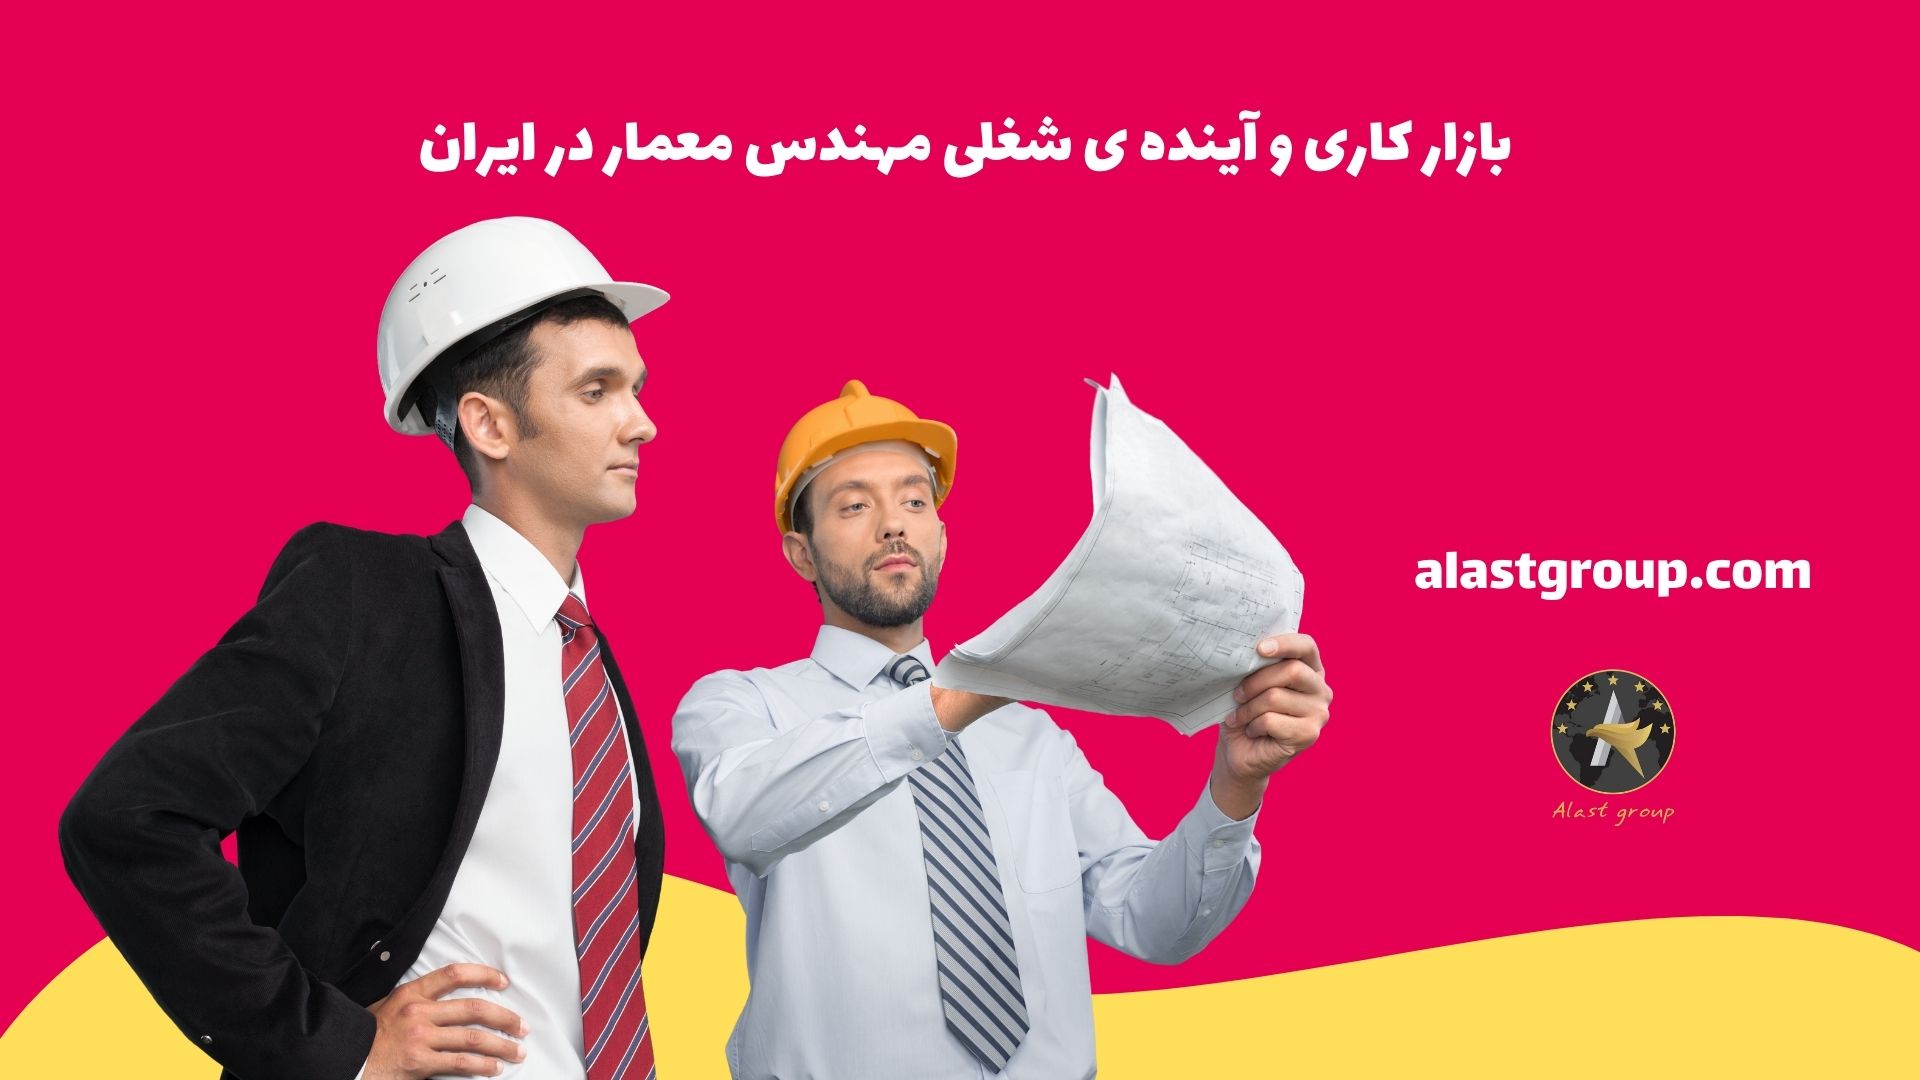 بازار کاری و آینده ی شغلی مهندس معمار در ایران